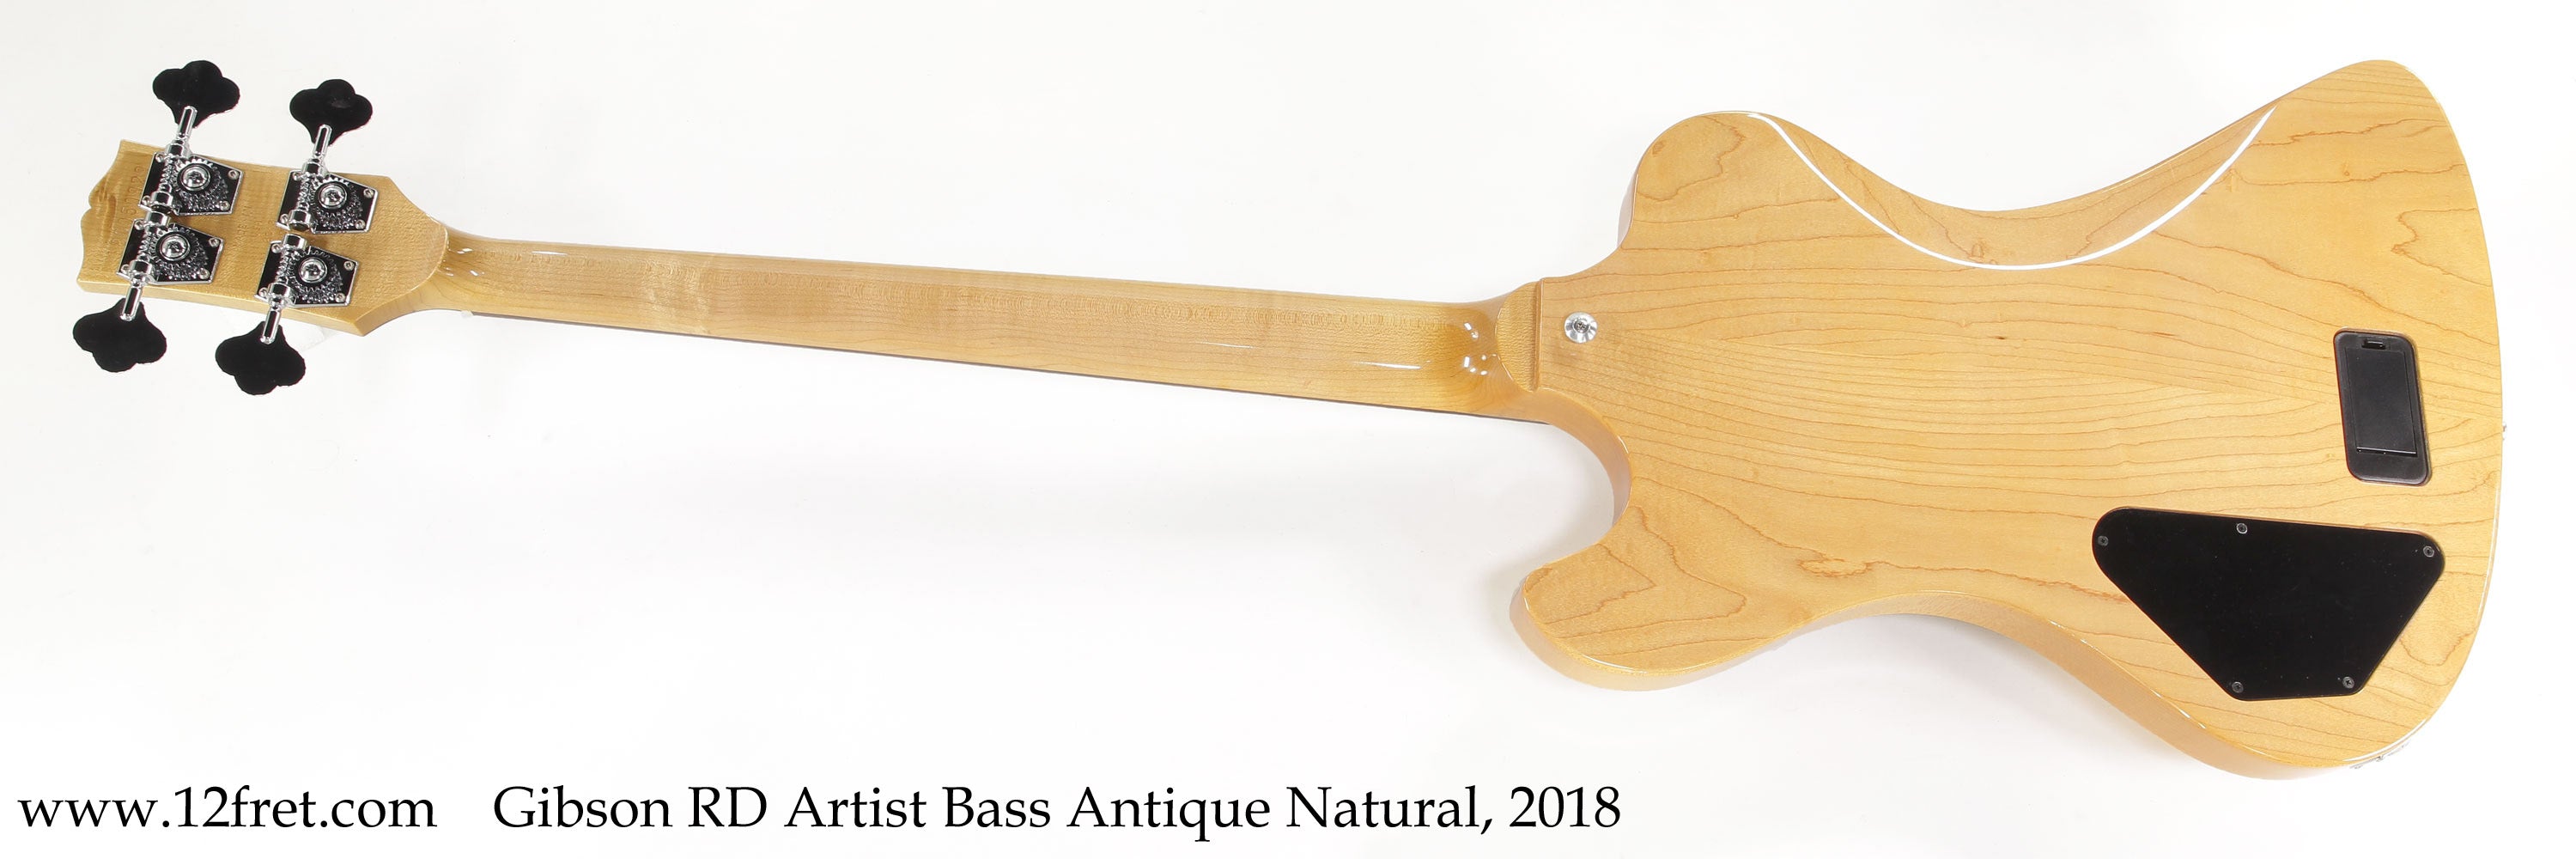 Gibson RD Artist Bass Antique Natural, 2018 - The Twelfth Fret